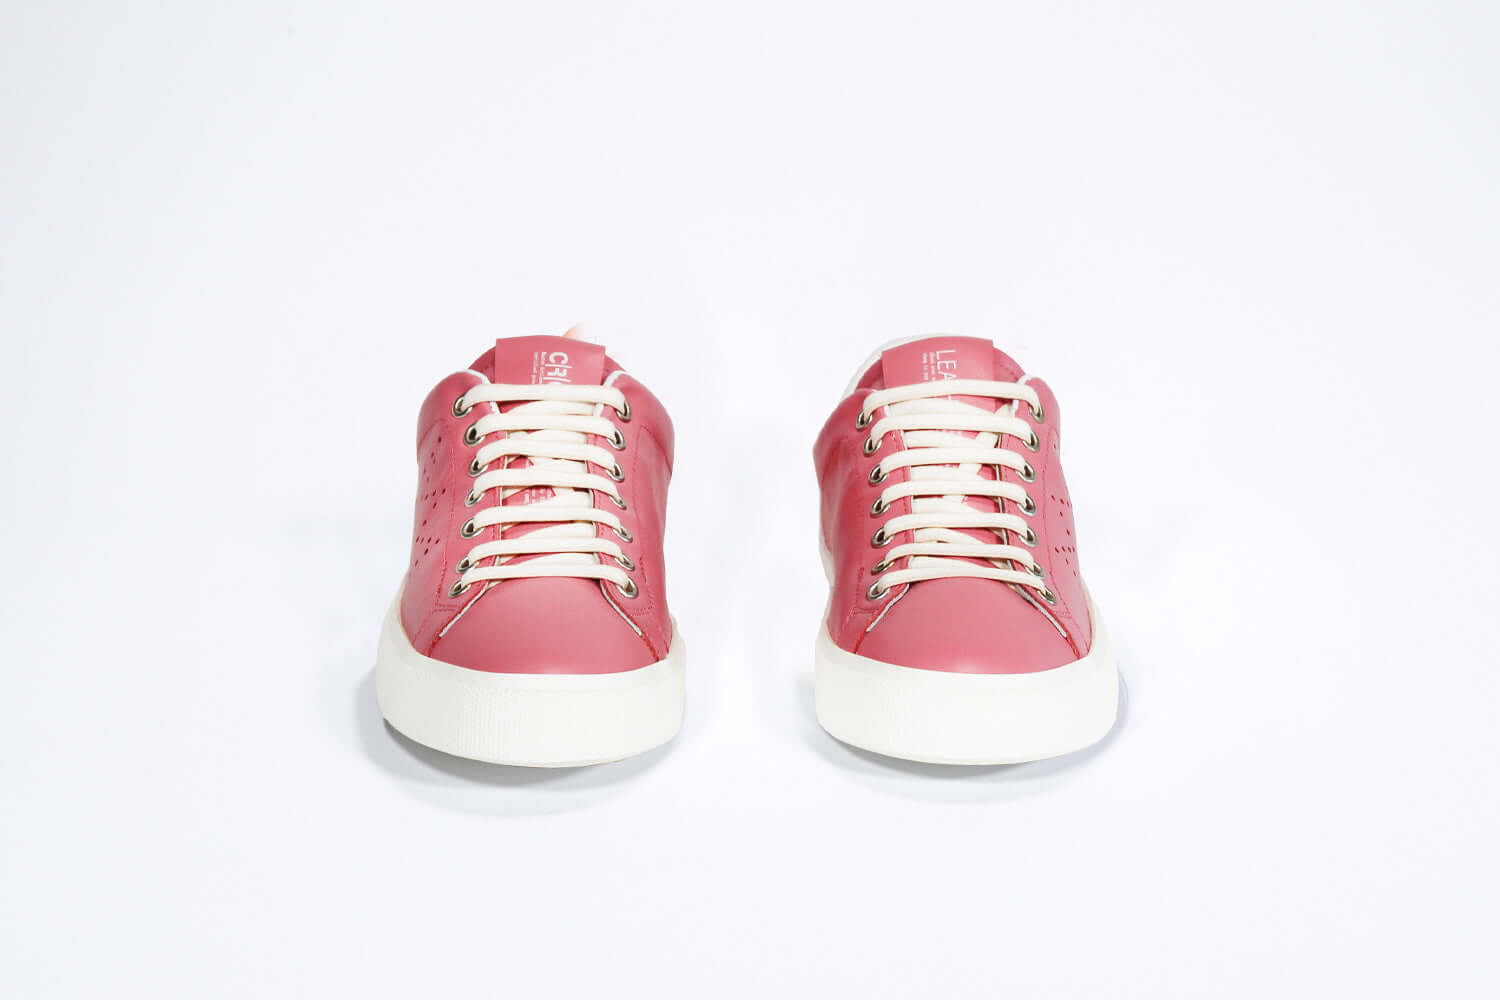 Vorderansicht des rosafarbenen Low Top sneaker mit weißen Details und perforiertem Kronenlogo auf dem Obermaterial. Obermaterial aus Vollleder und weiße Gummisohle.